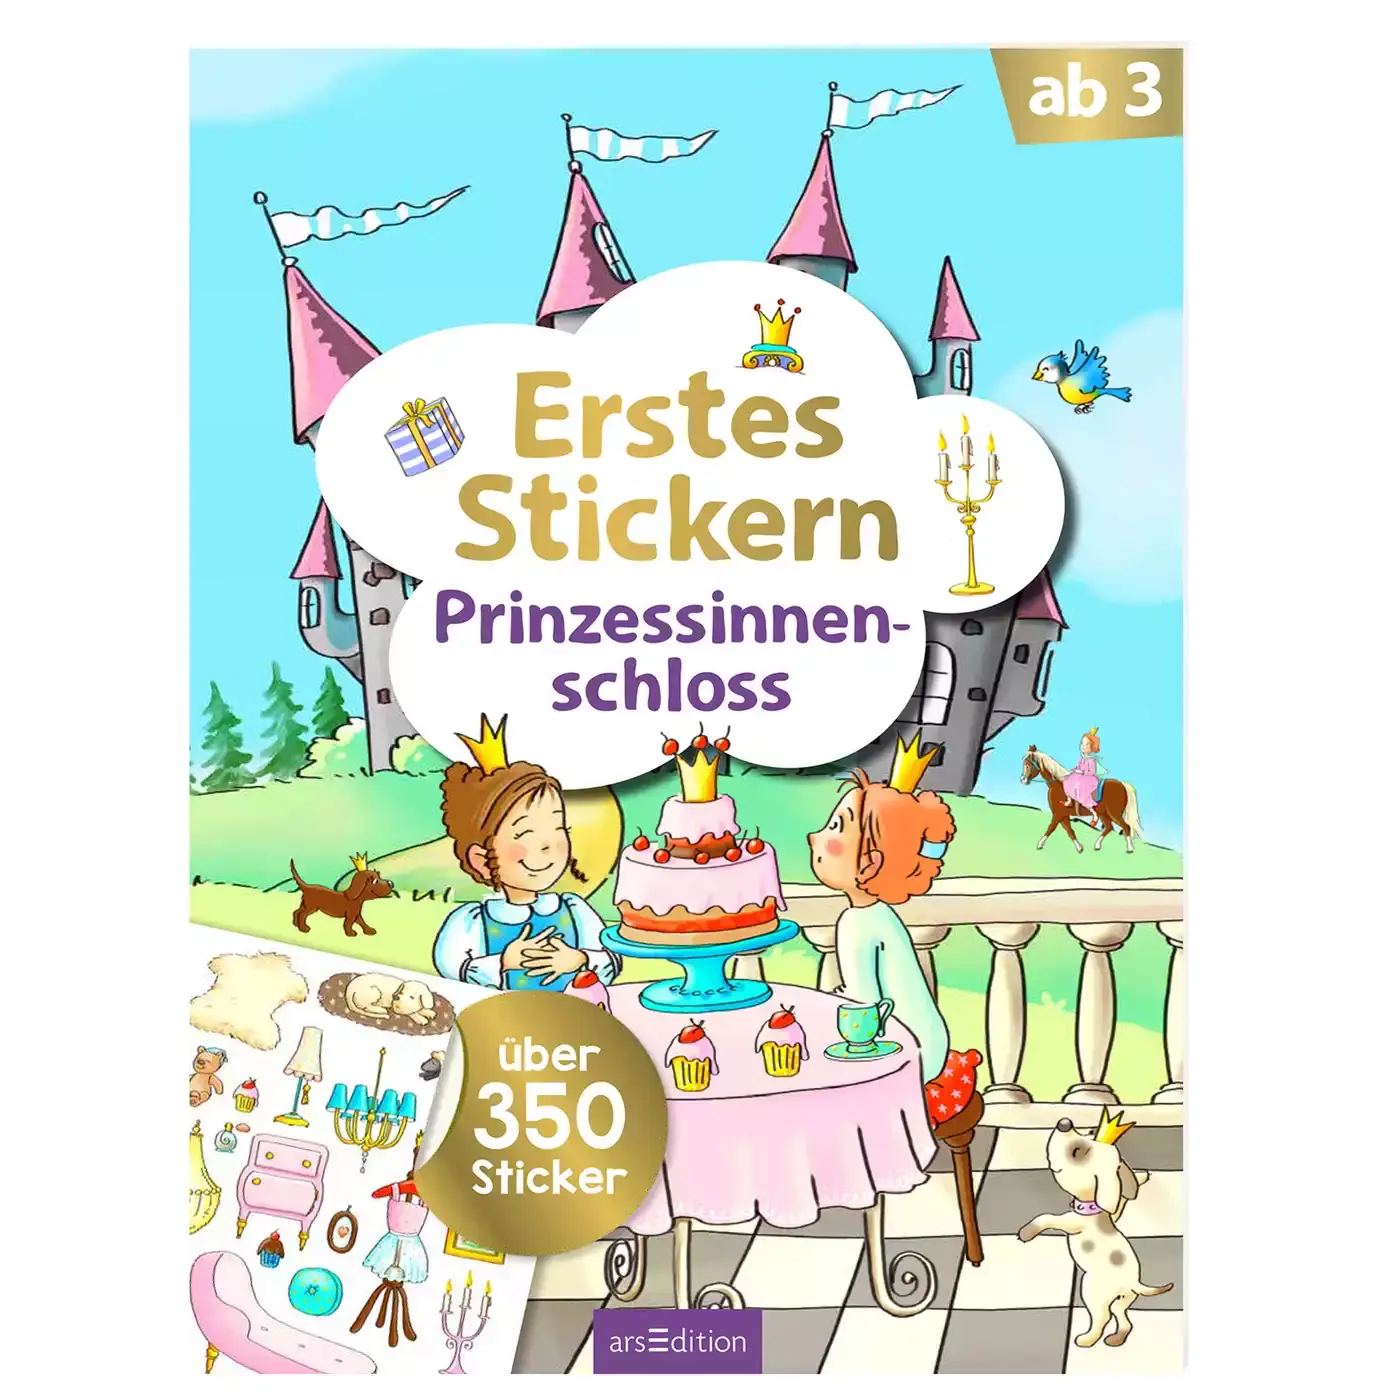 Erstes Stickern - Prinzessinnenschloss arsEdition 2000582203903 1